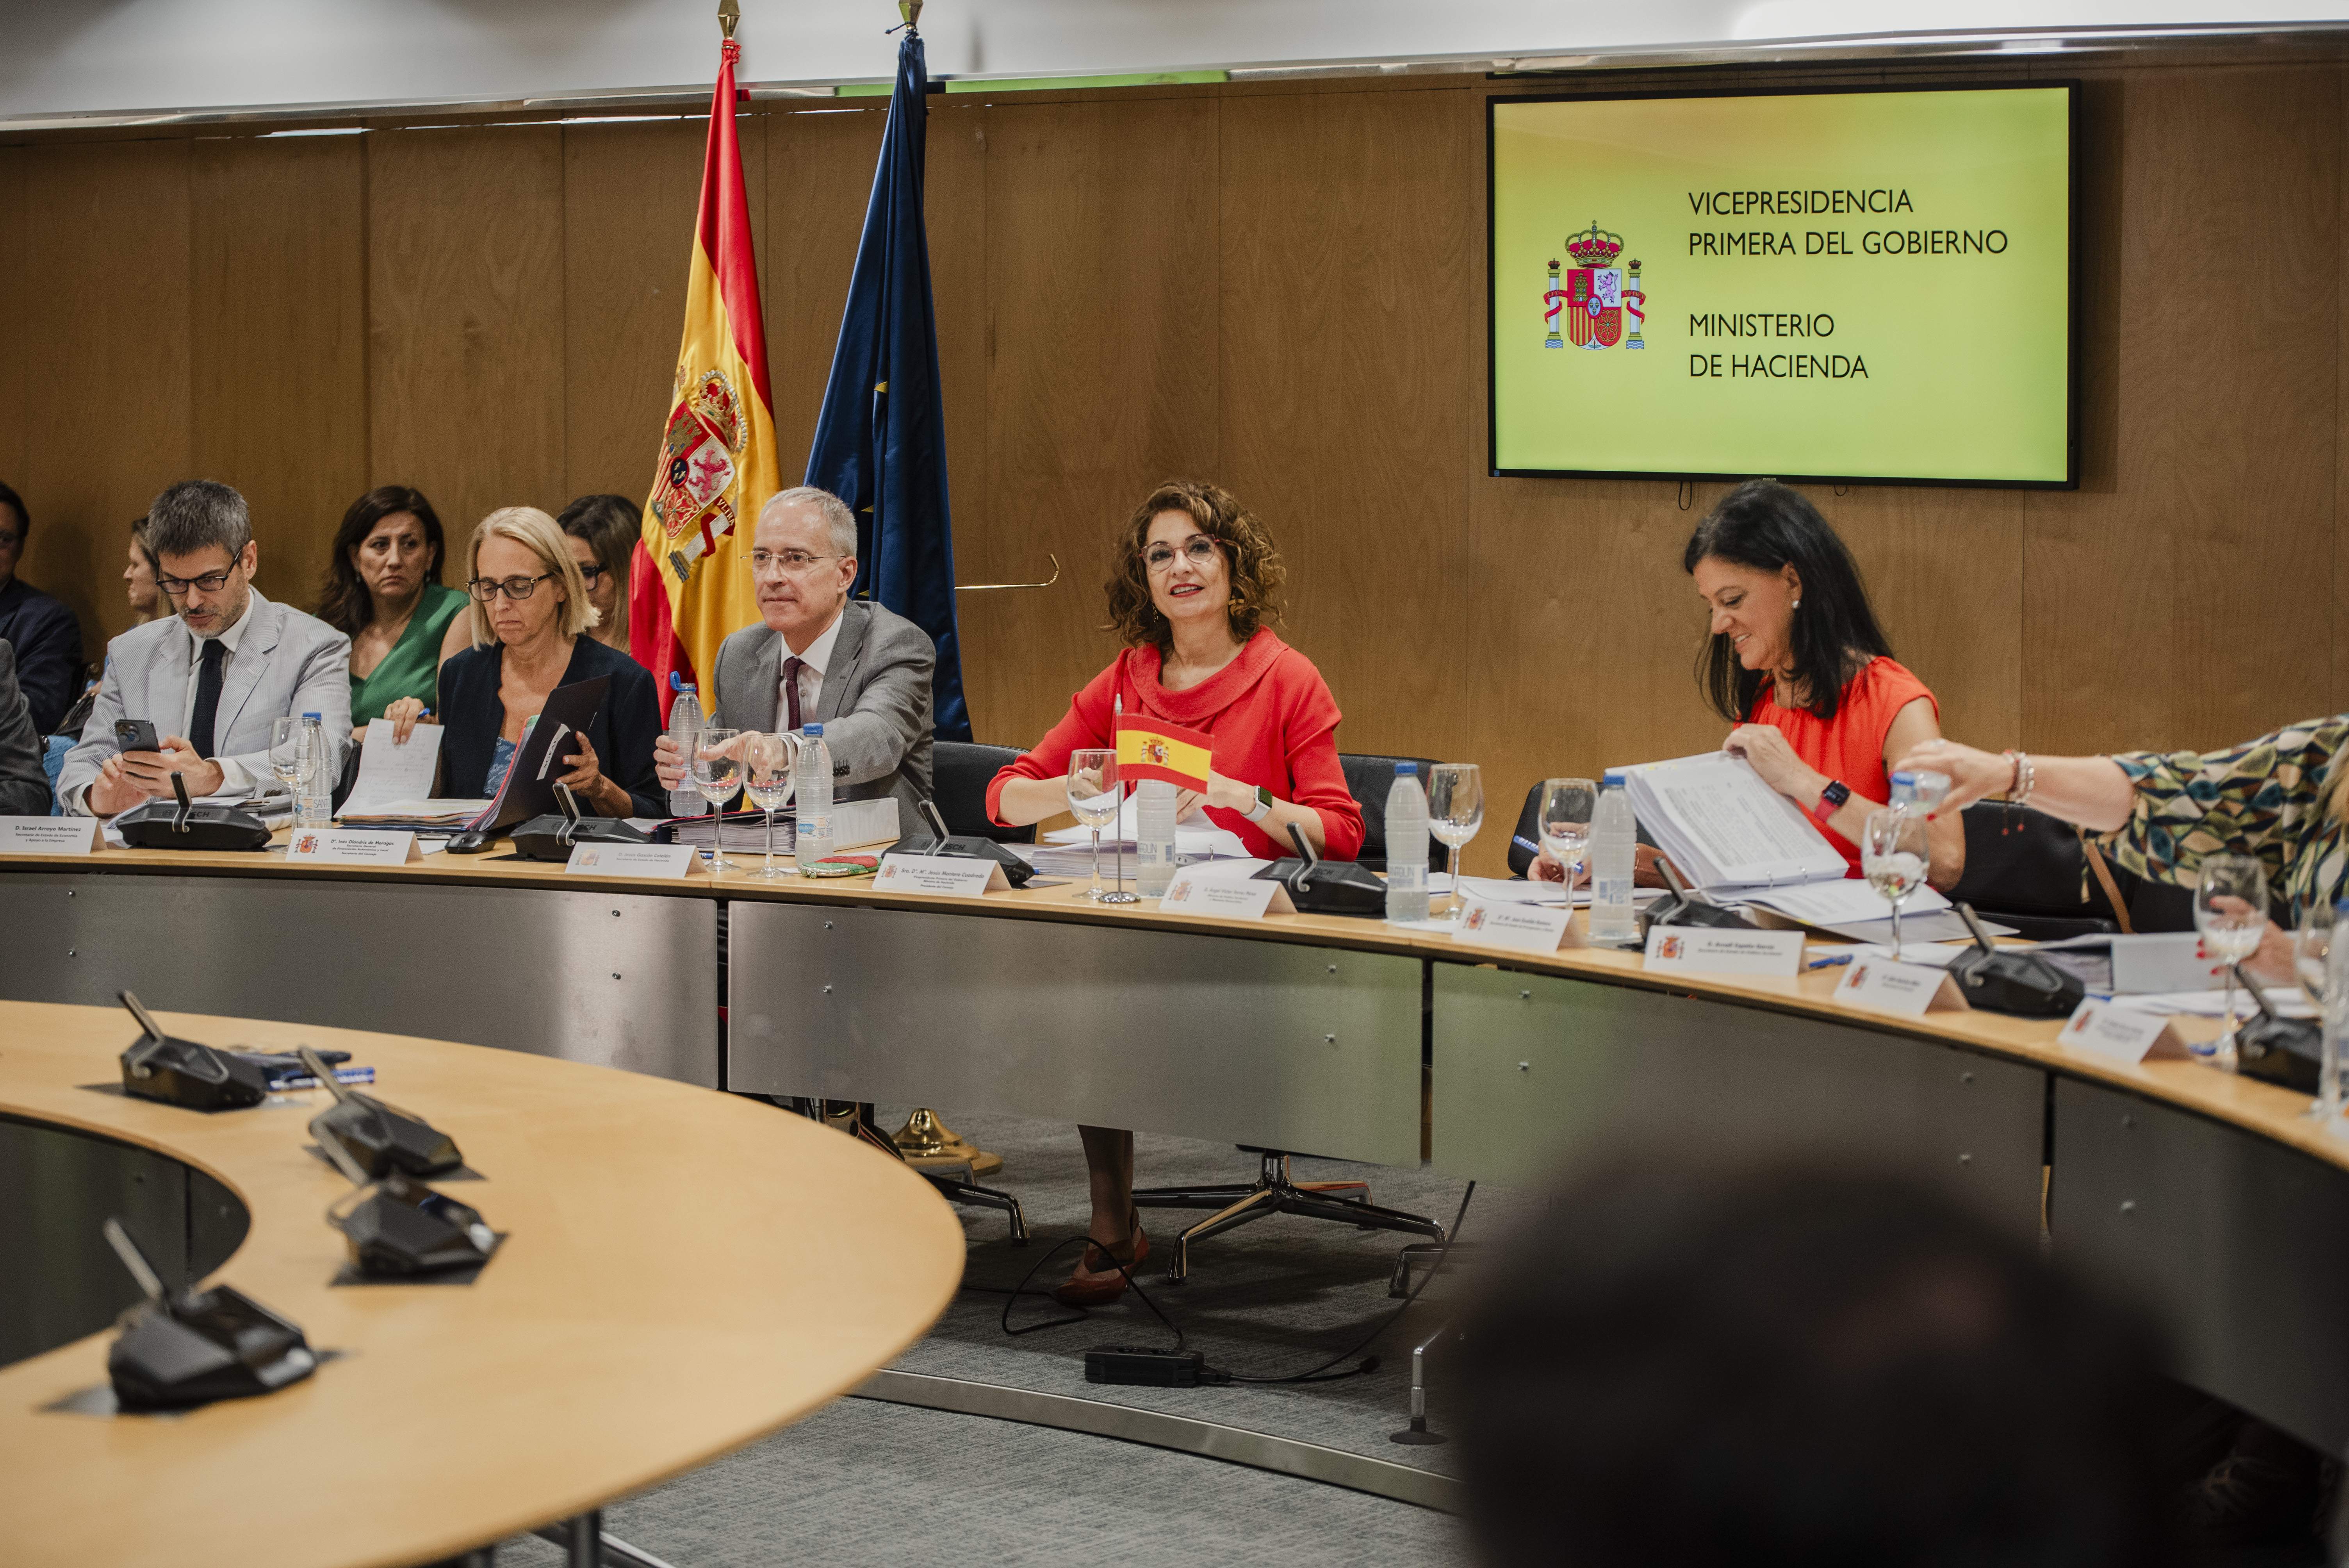 Page y las autonomías del PP hacen pinza contra "el agravio injusto" de la financiación singular catalana